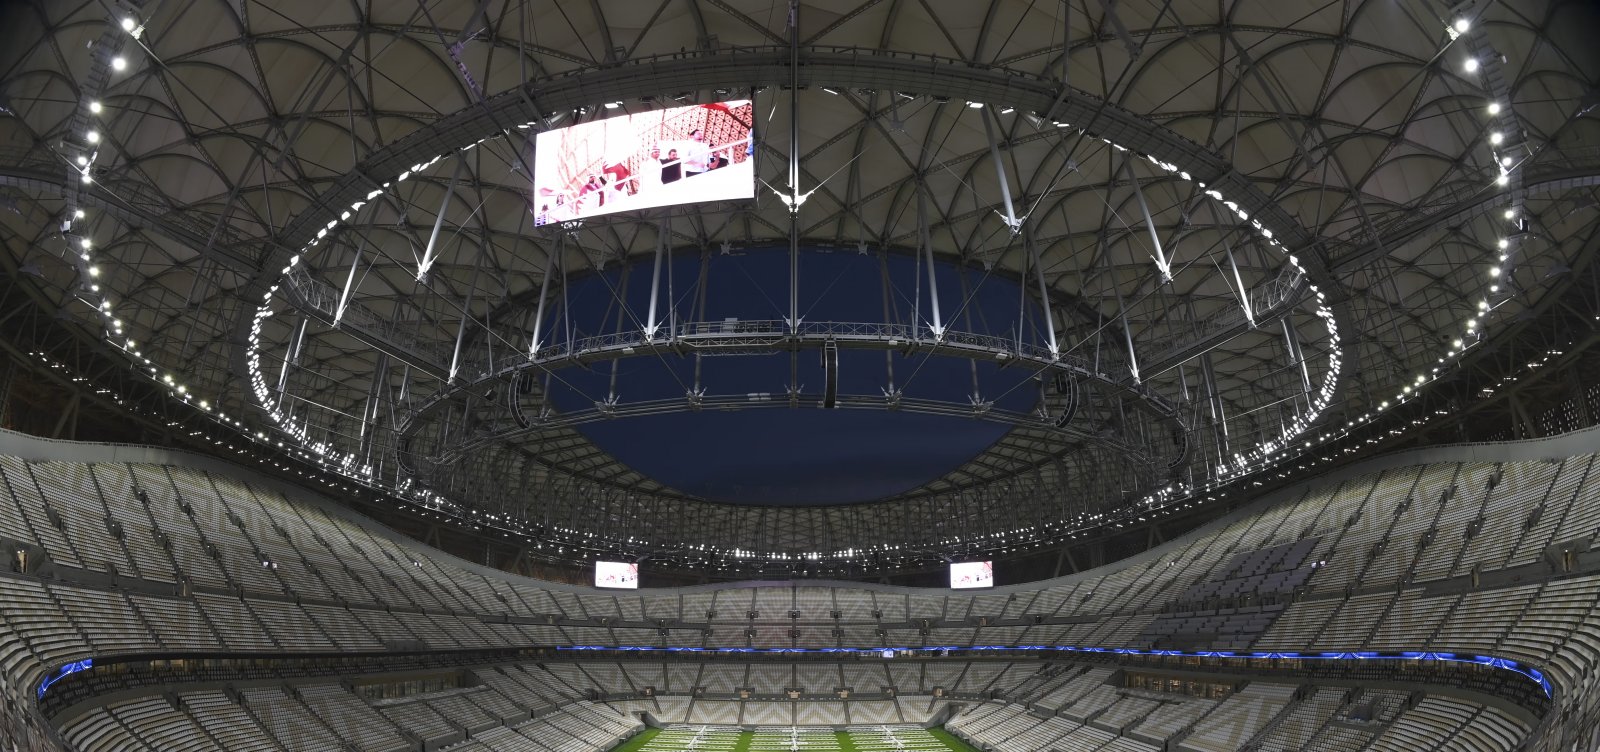 Cerimônia de abertura da Copa do Mundo ocorre neste domingo; confira detalhes